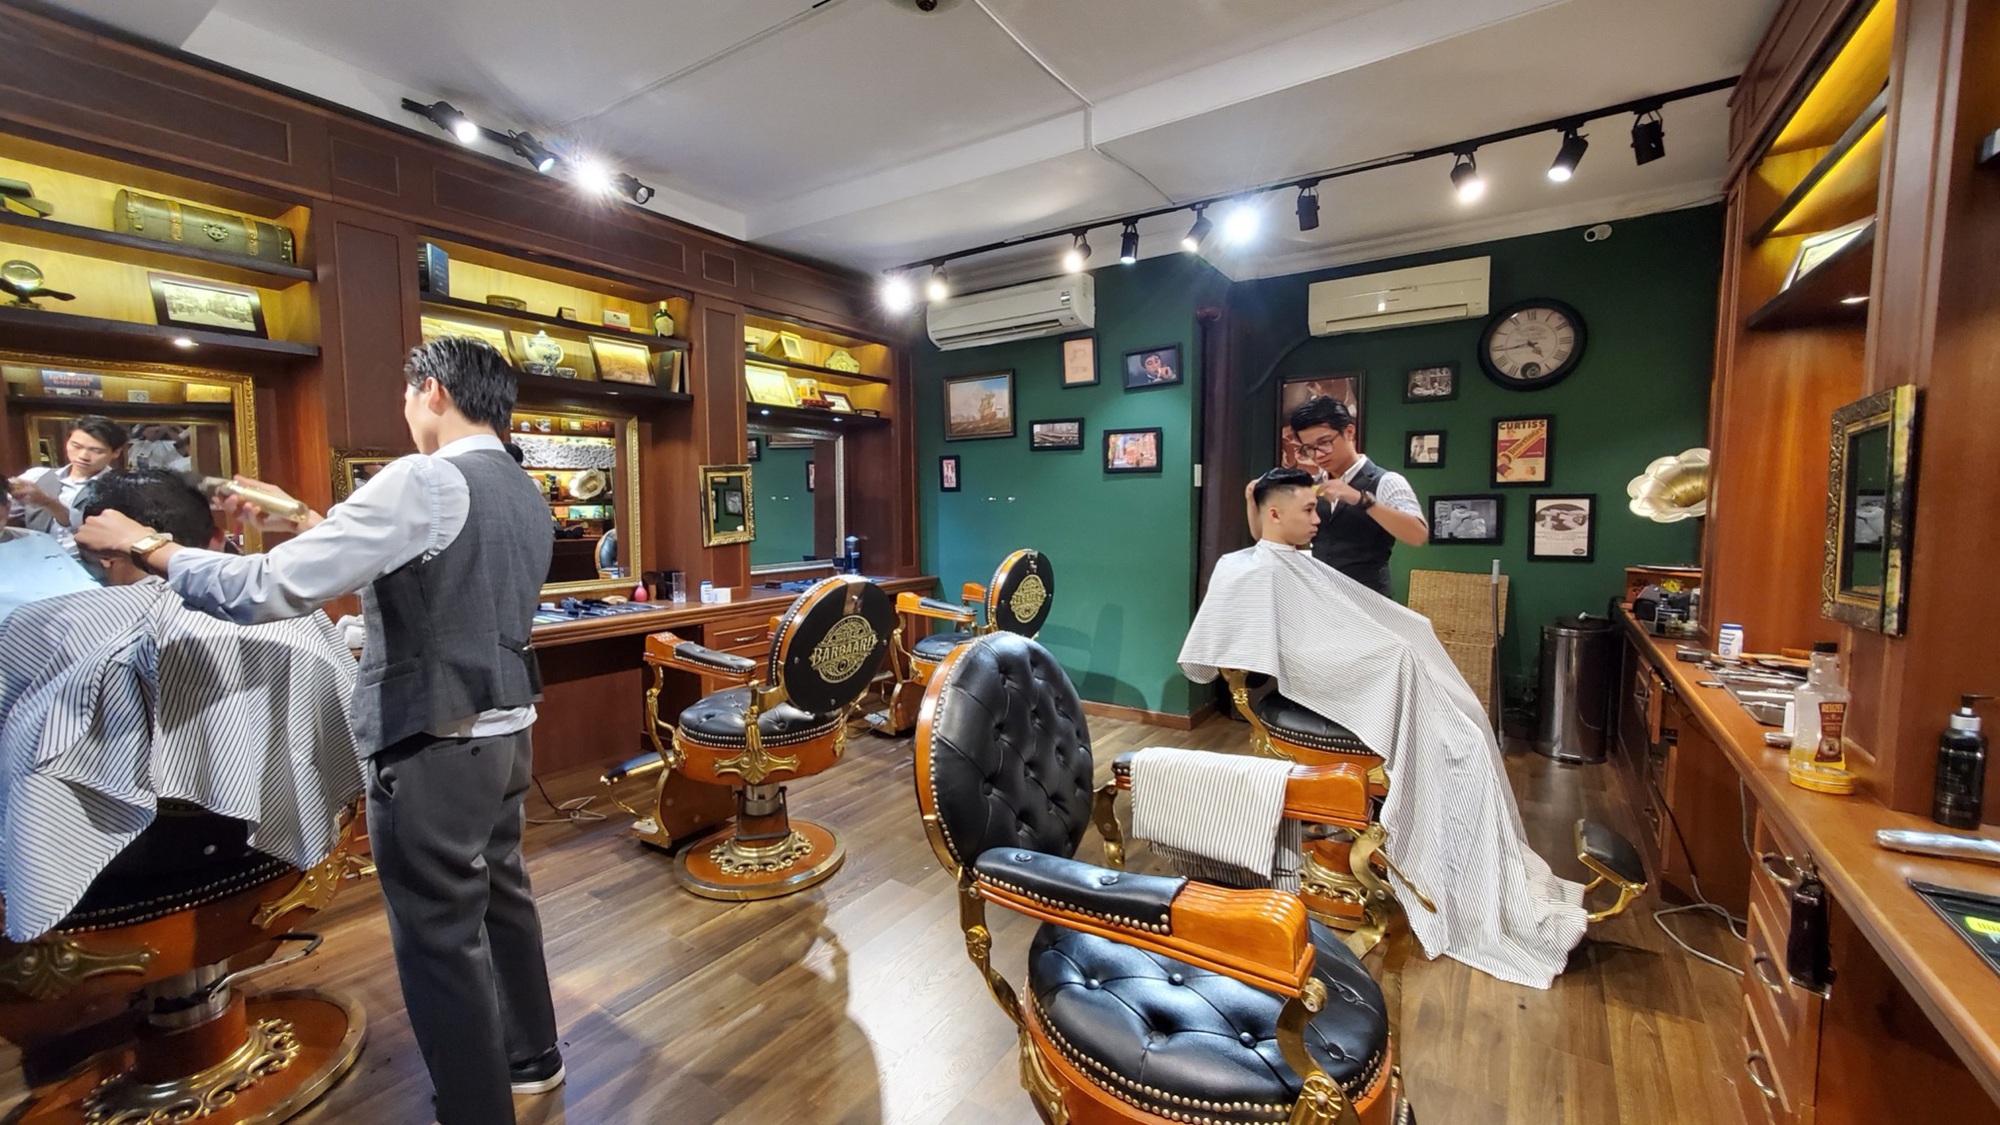 Nhiều chủ tiệm Hair Salon, Spa, Nails - Mi tăng thu nhập “khủng” mà vẫn “nhàn tênh” nhờ Phần mềm quản lý KiotViet Salon - Ảnh 1.